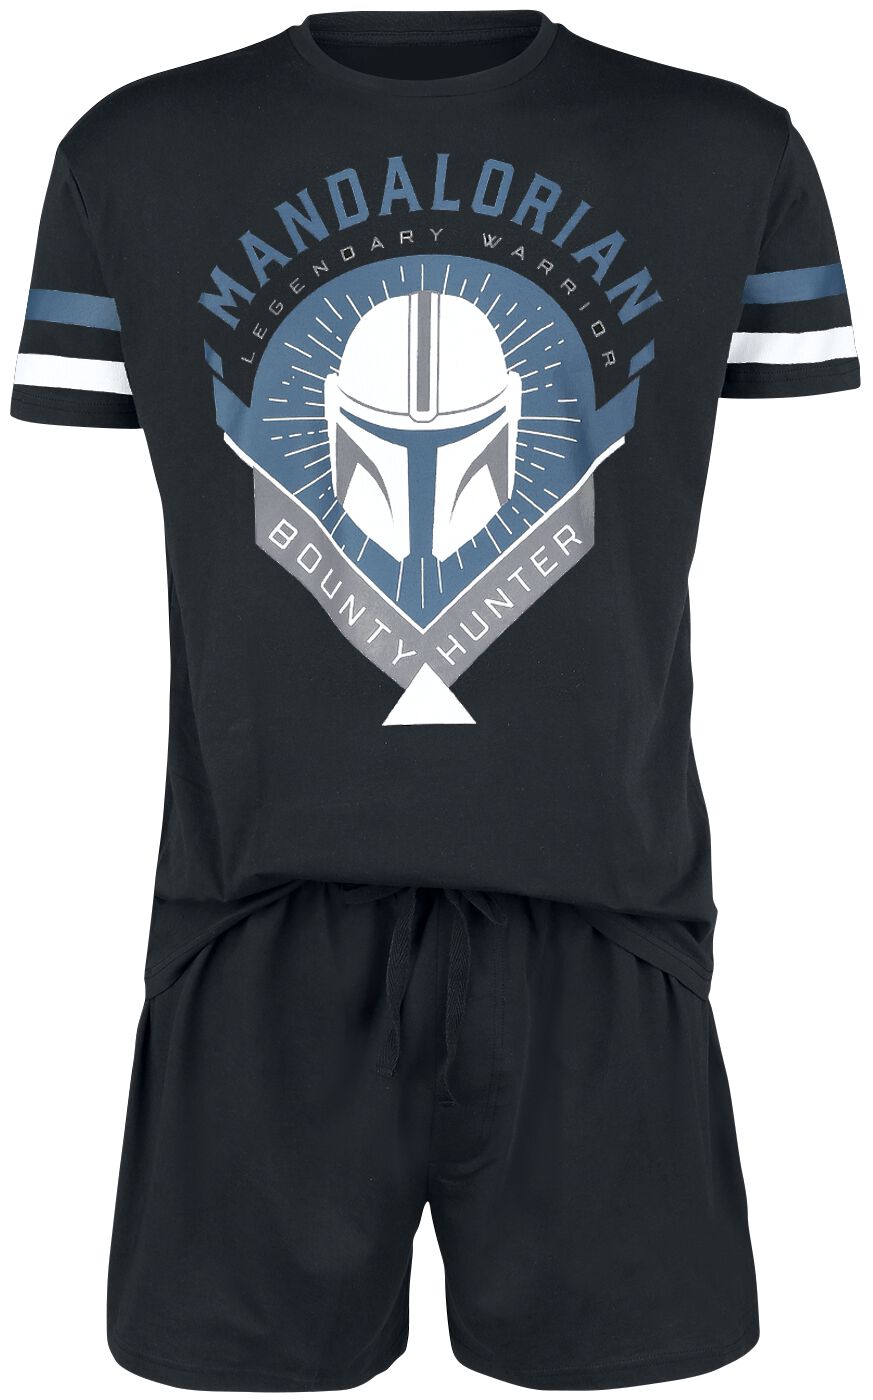 Star Wars Schlafanzug - The Mandalorian - Bounty Hunter - S bis 5XL - für Männer - Größe L - schwarz  - EMP exklusives Merchandise!